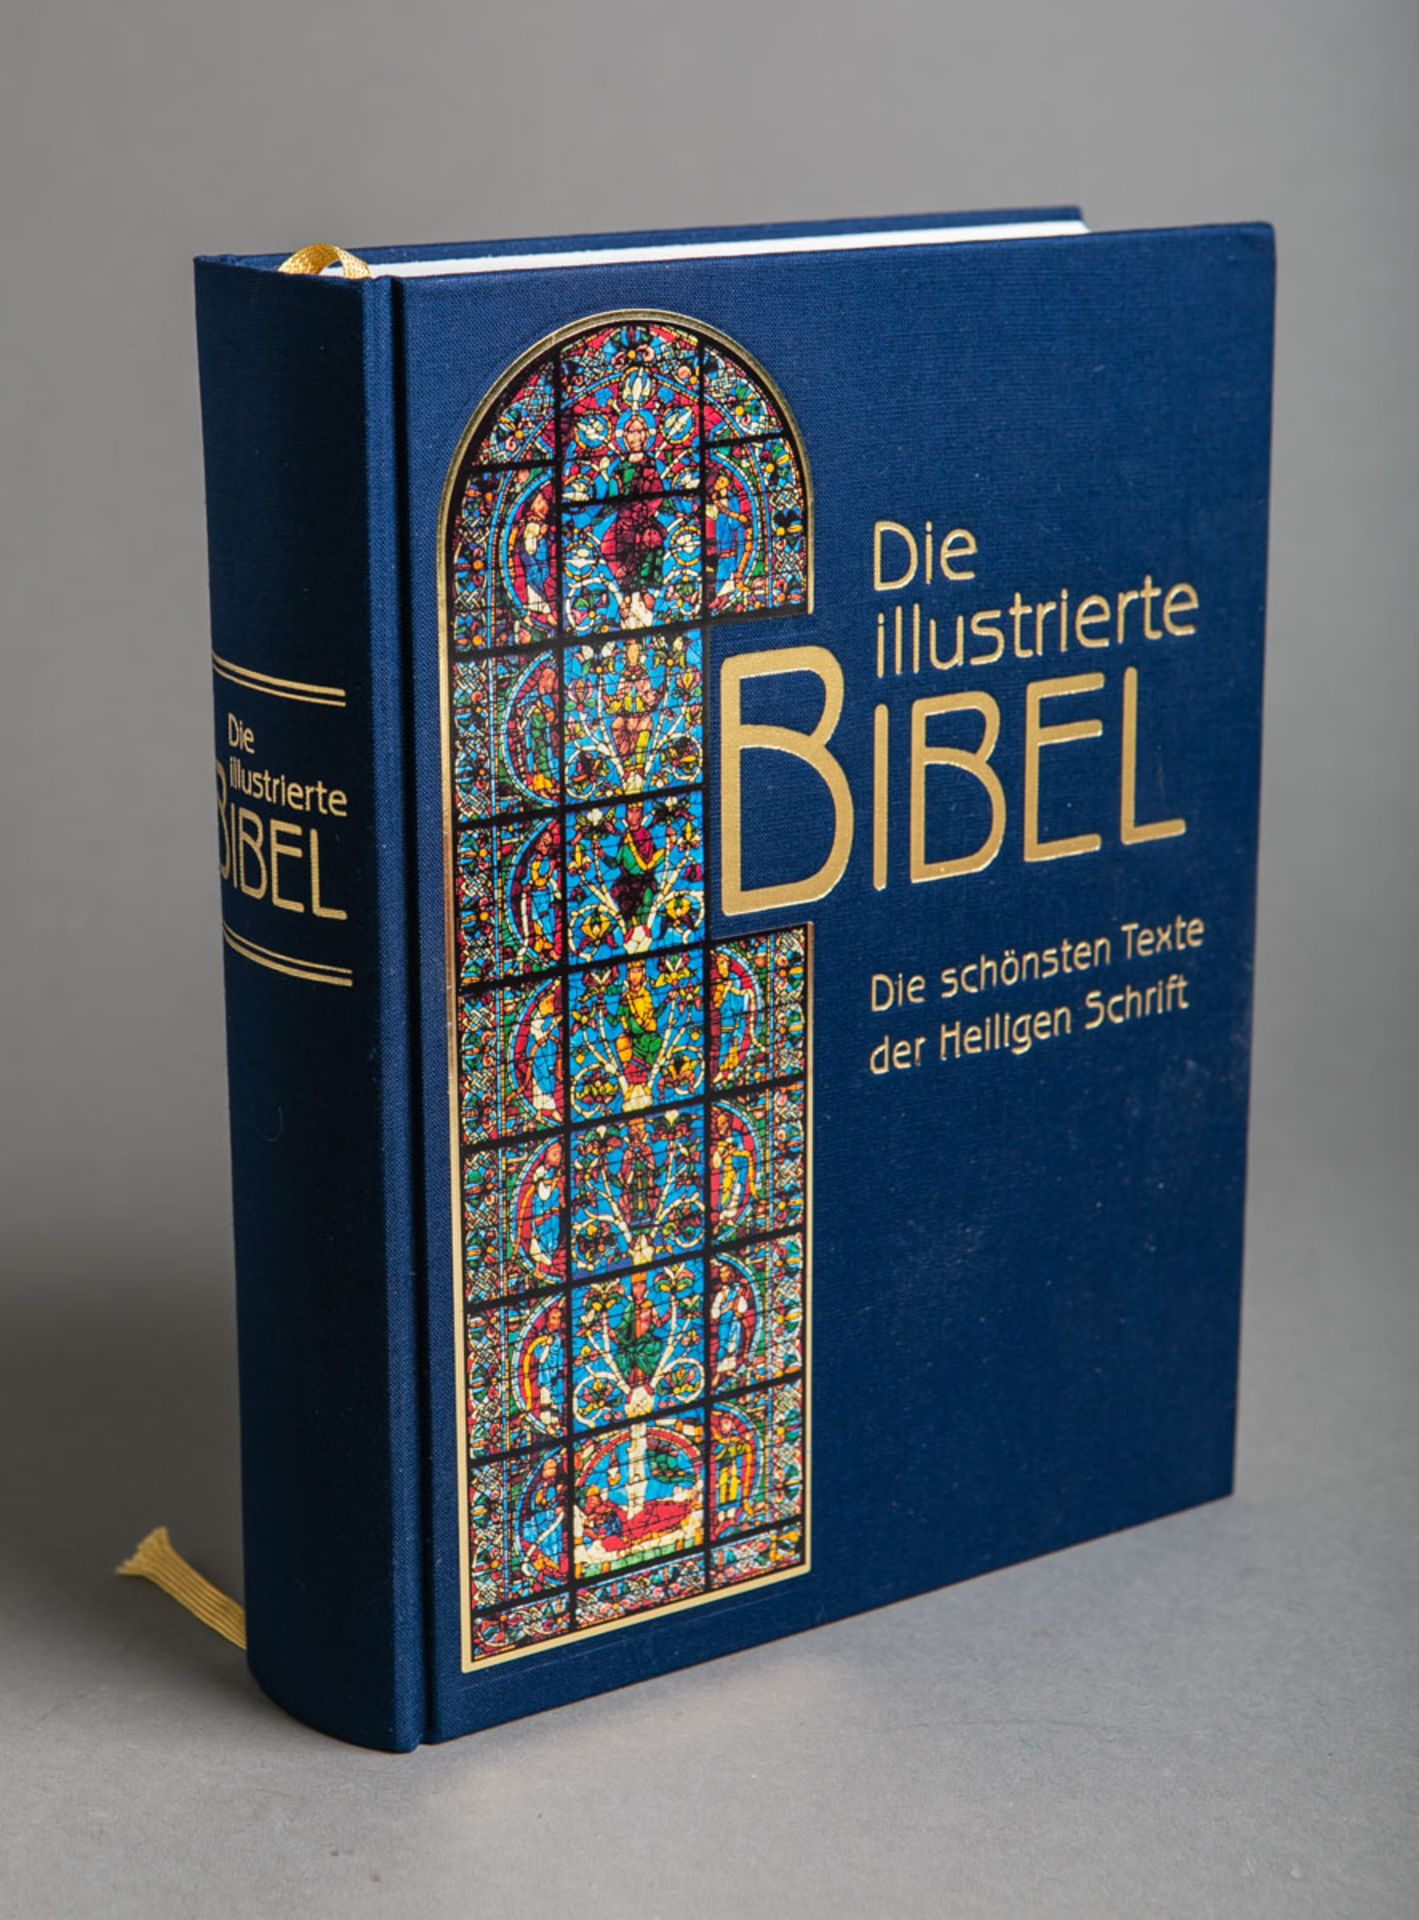 Dali, Salvador (1904 - 1989), "Die illustrierte Bibel. Die schönsten Texte der Heiligen Schrift" (19